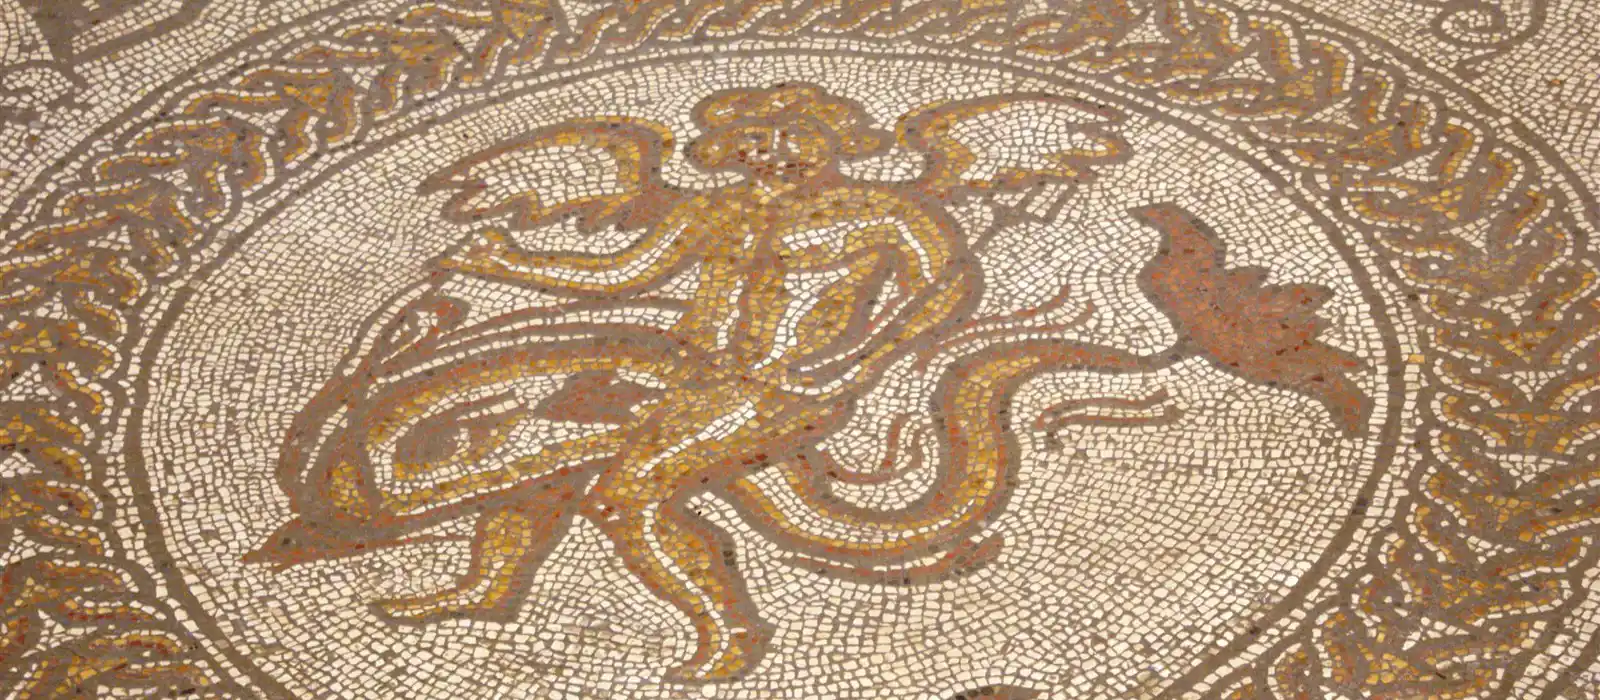 An Amazing mosaic at Fishbourne Roman Palace